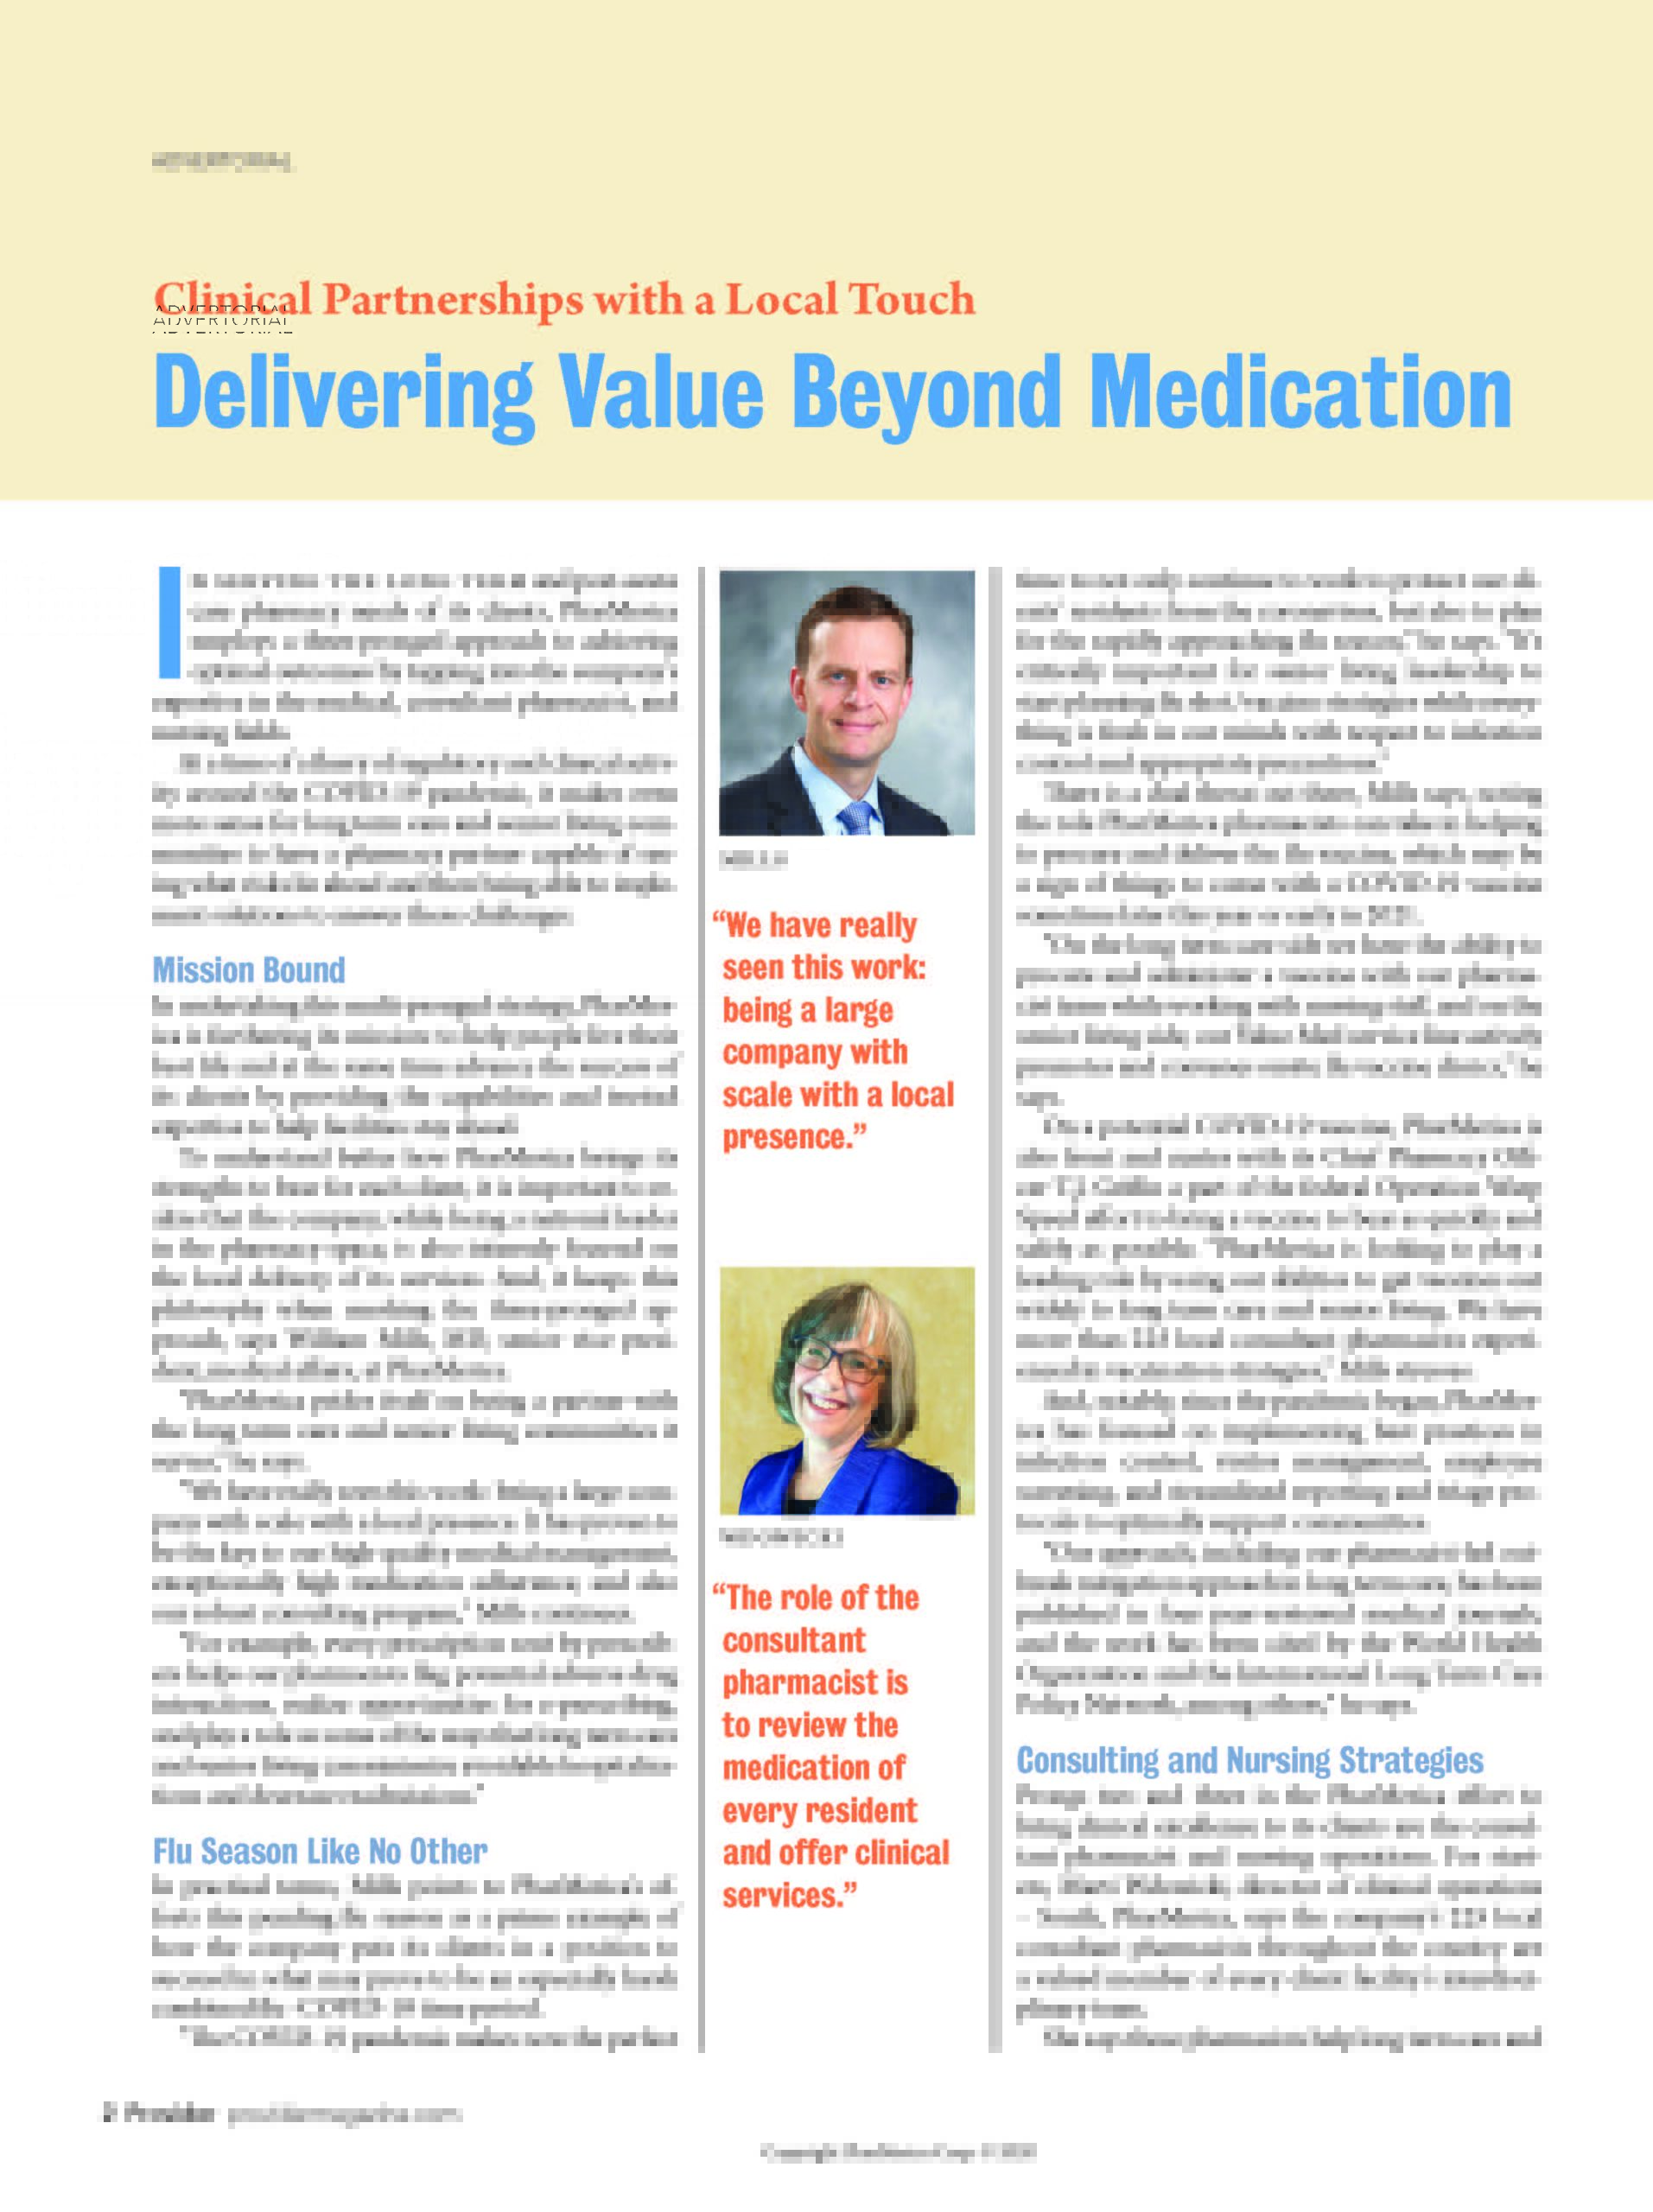 Delivering Value Beyond Medication Advertorial